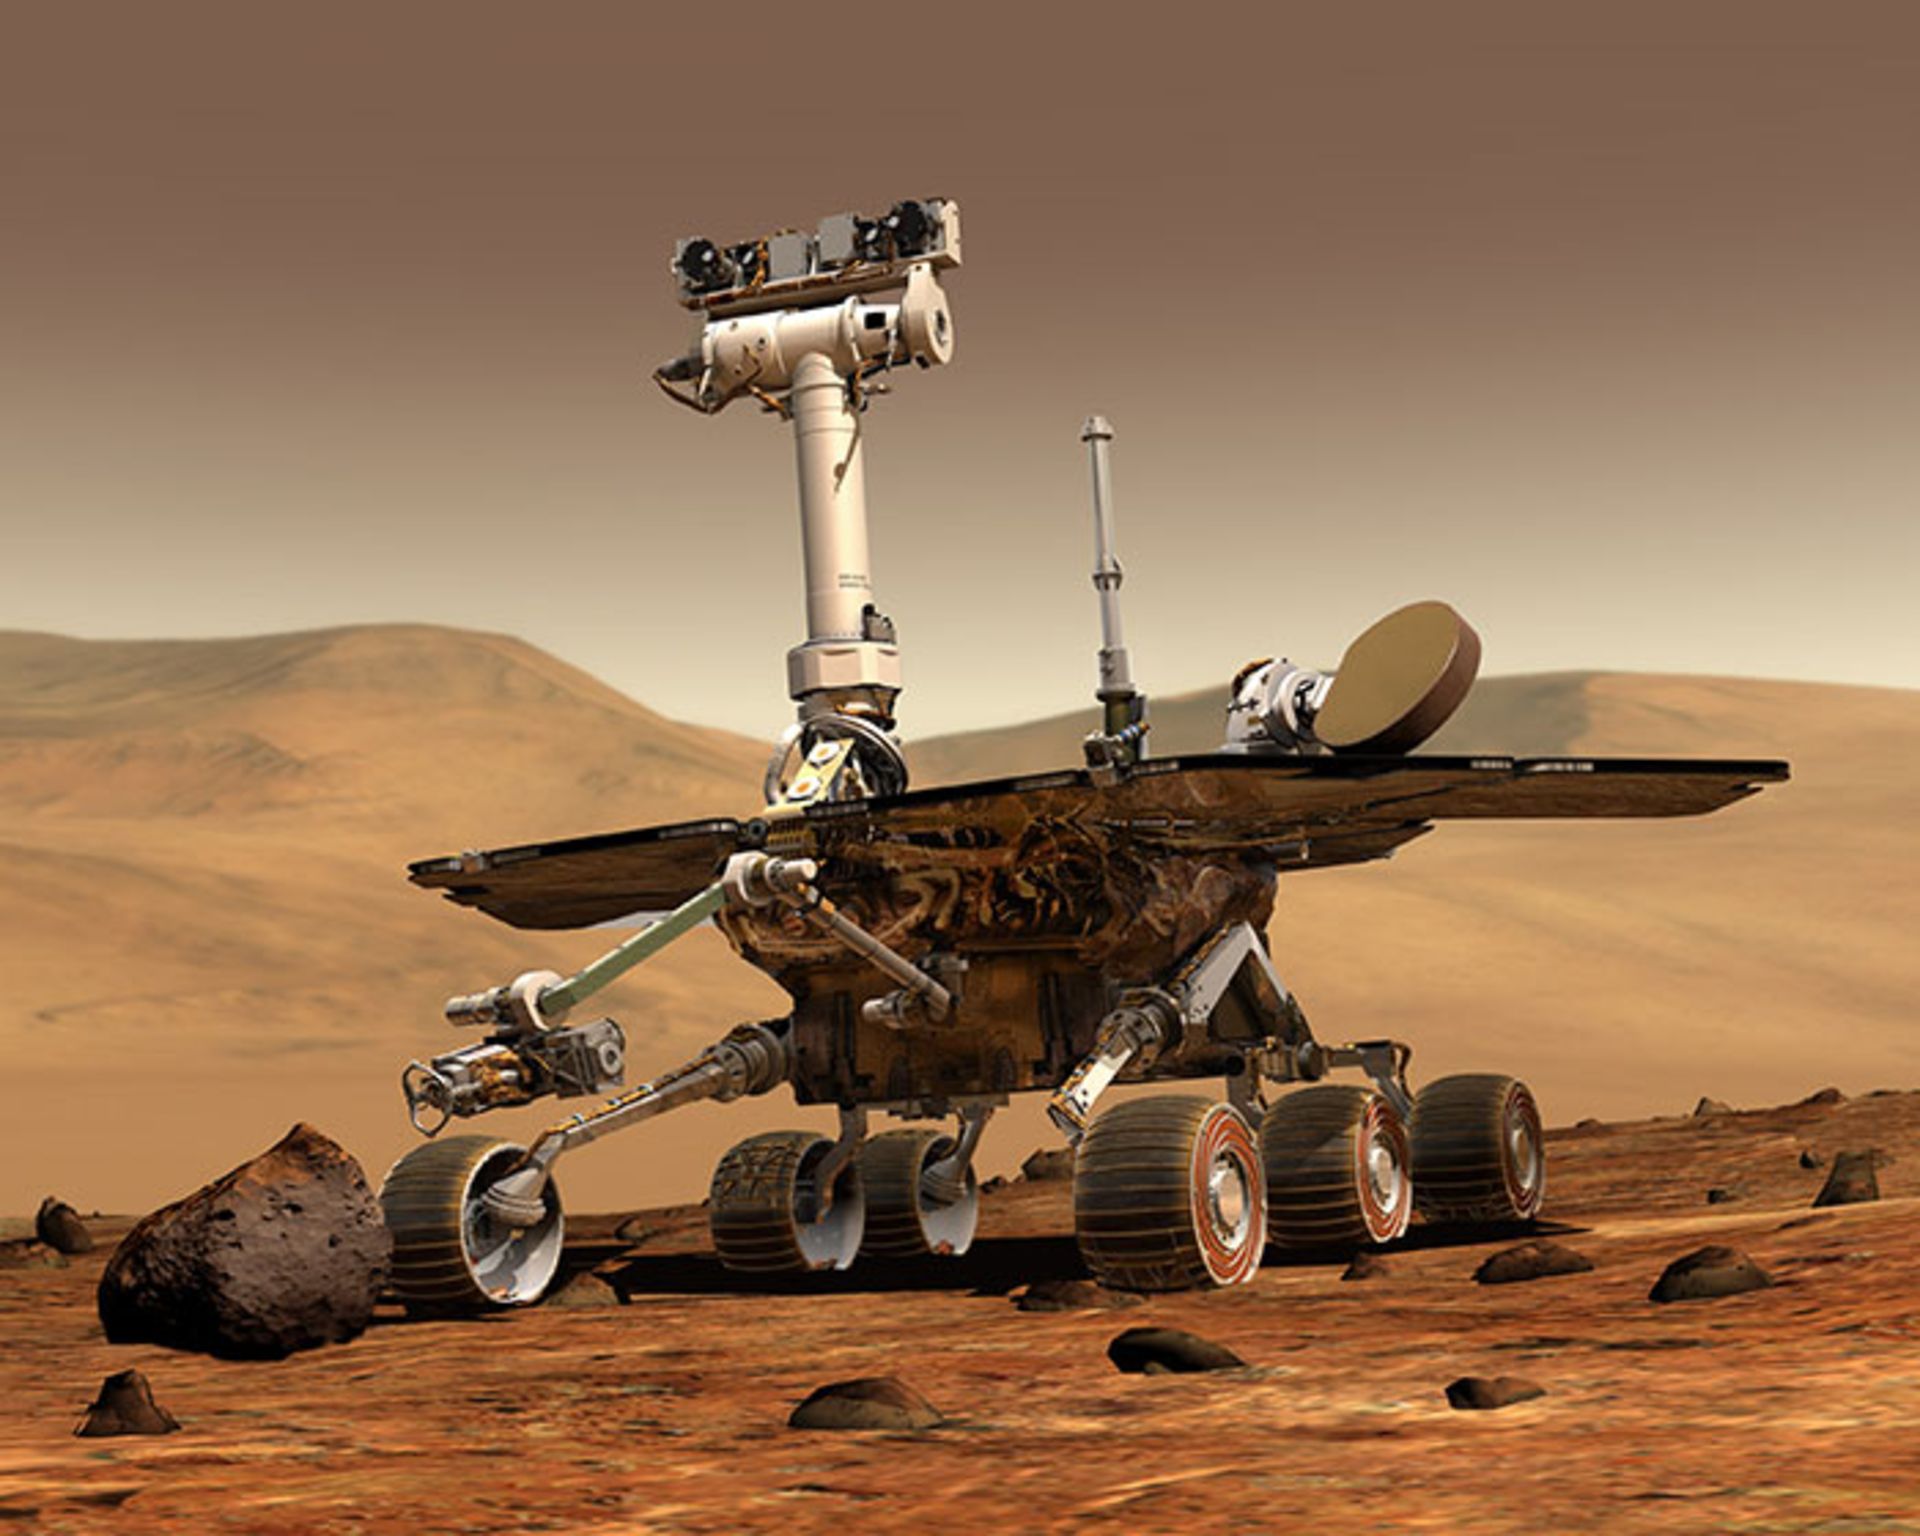 مرجع متخصصين ايران mars rover